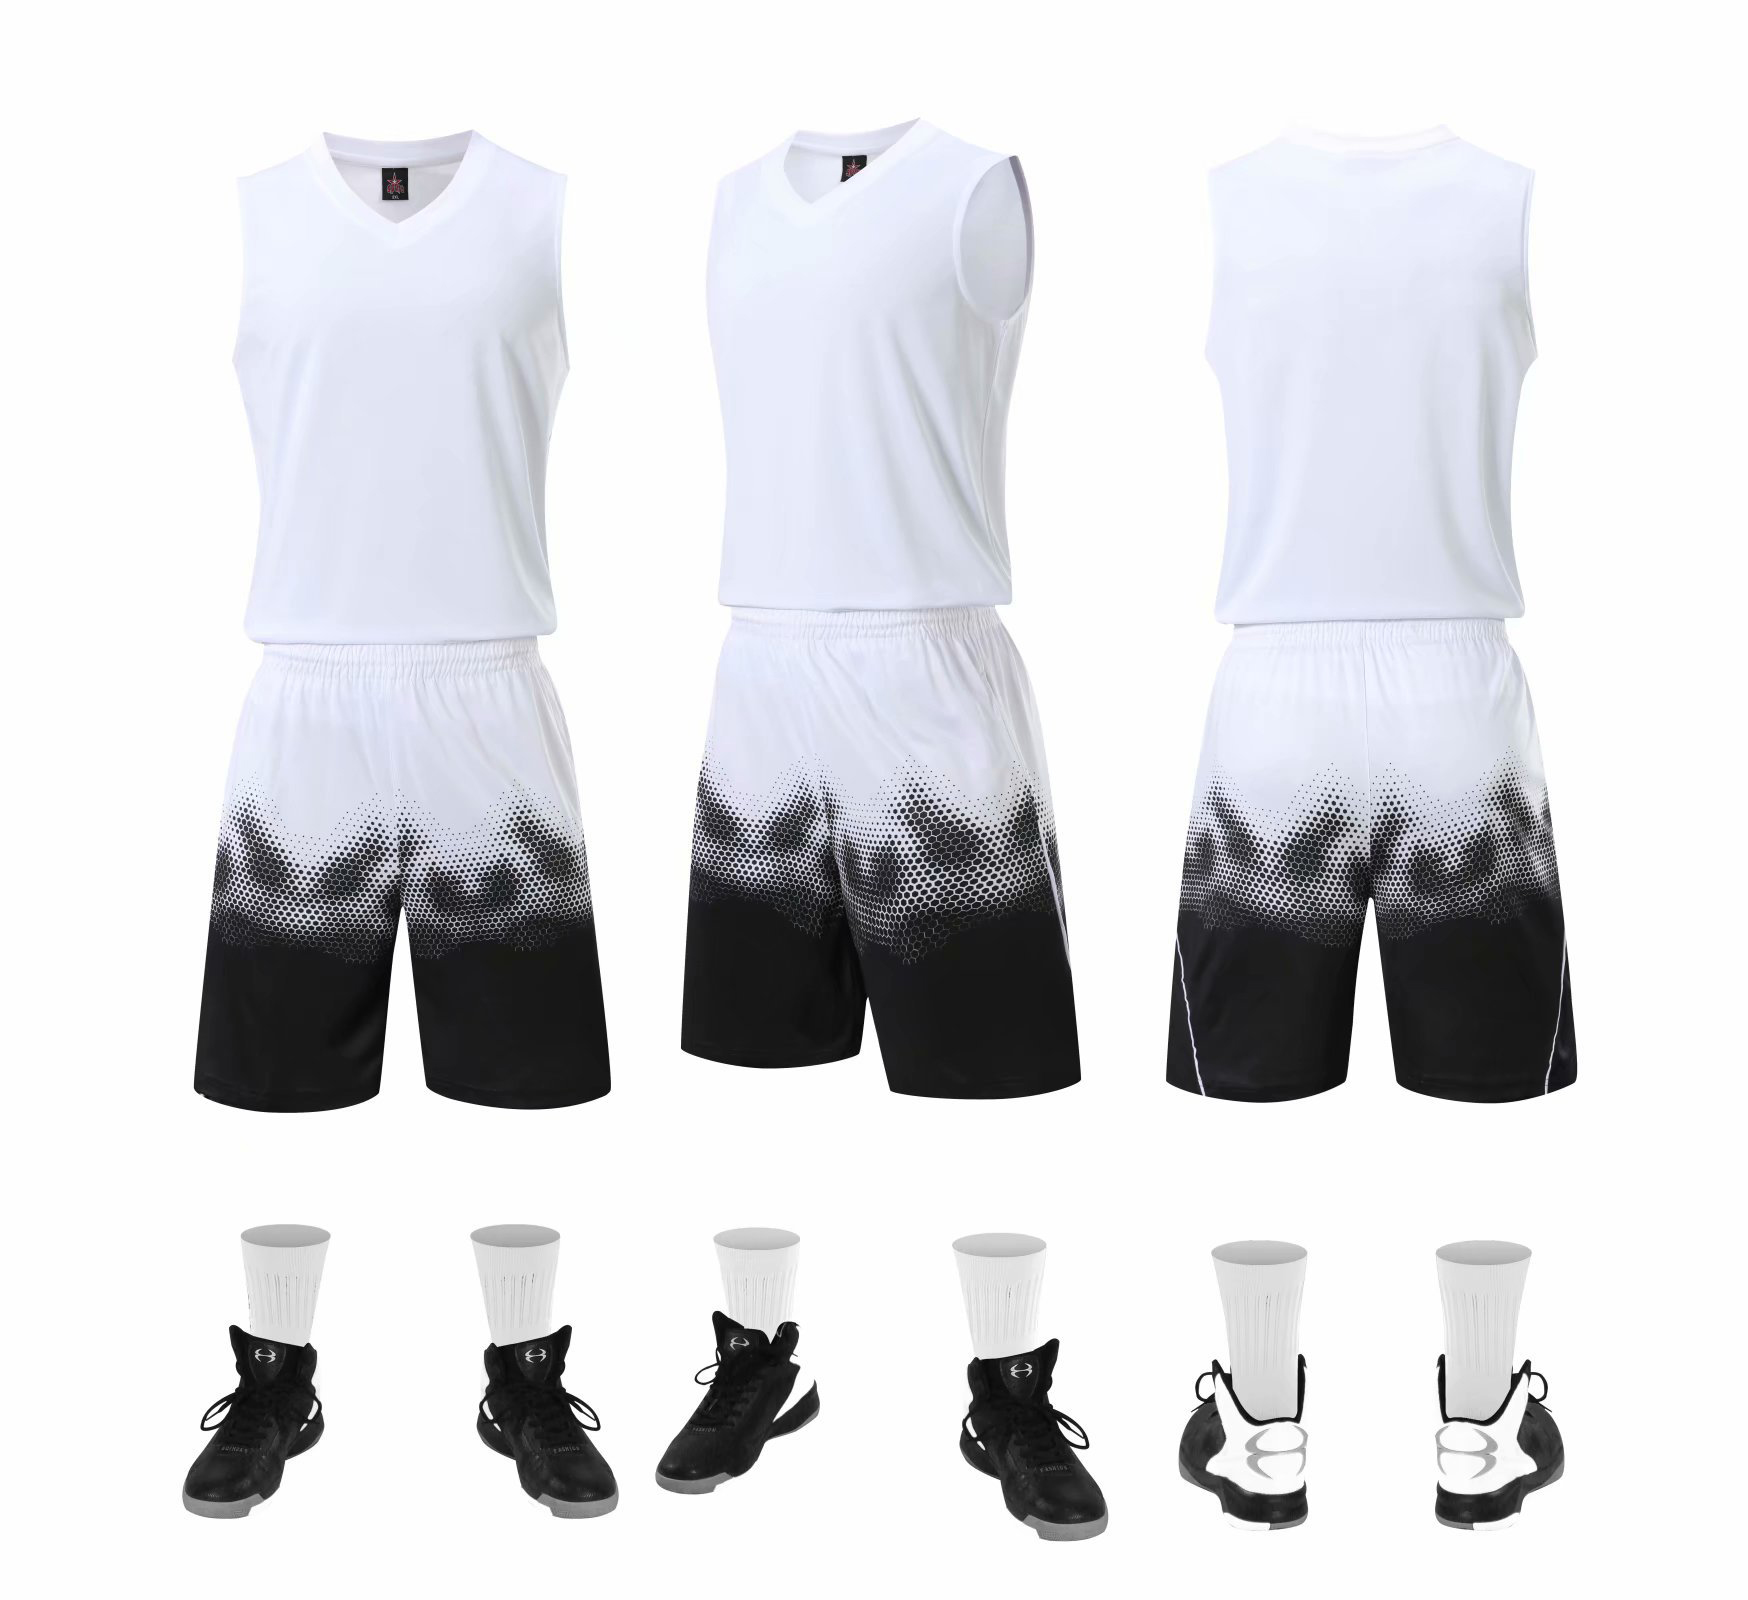 Bộ quần áo bóng rổ trơn Trắng - Bộ quần áo bóng rổ để in áo đội- Quần áo bóng rổ không logo - Mẫu 4-2021